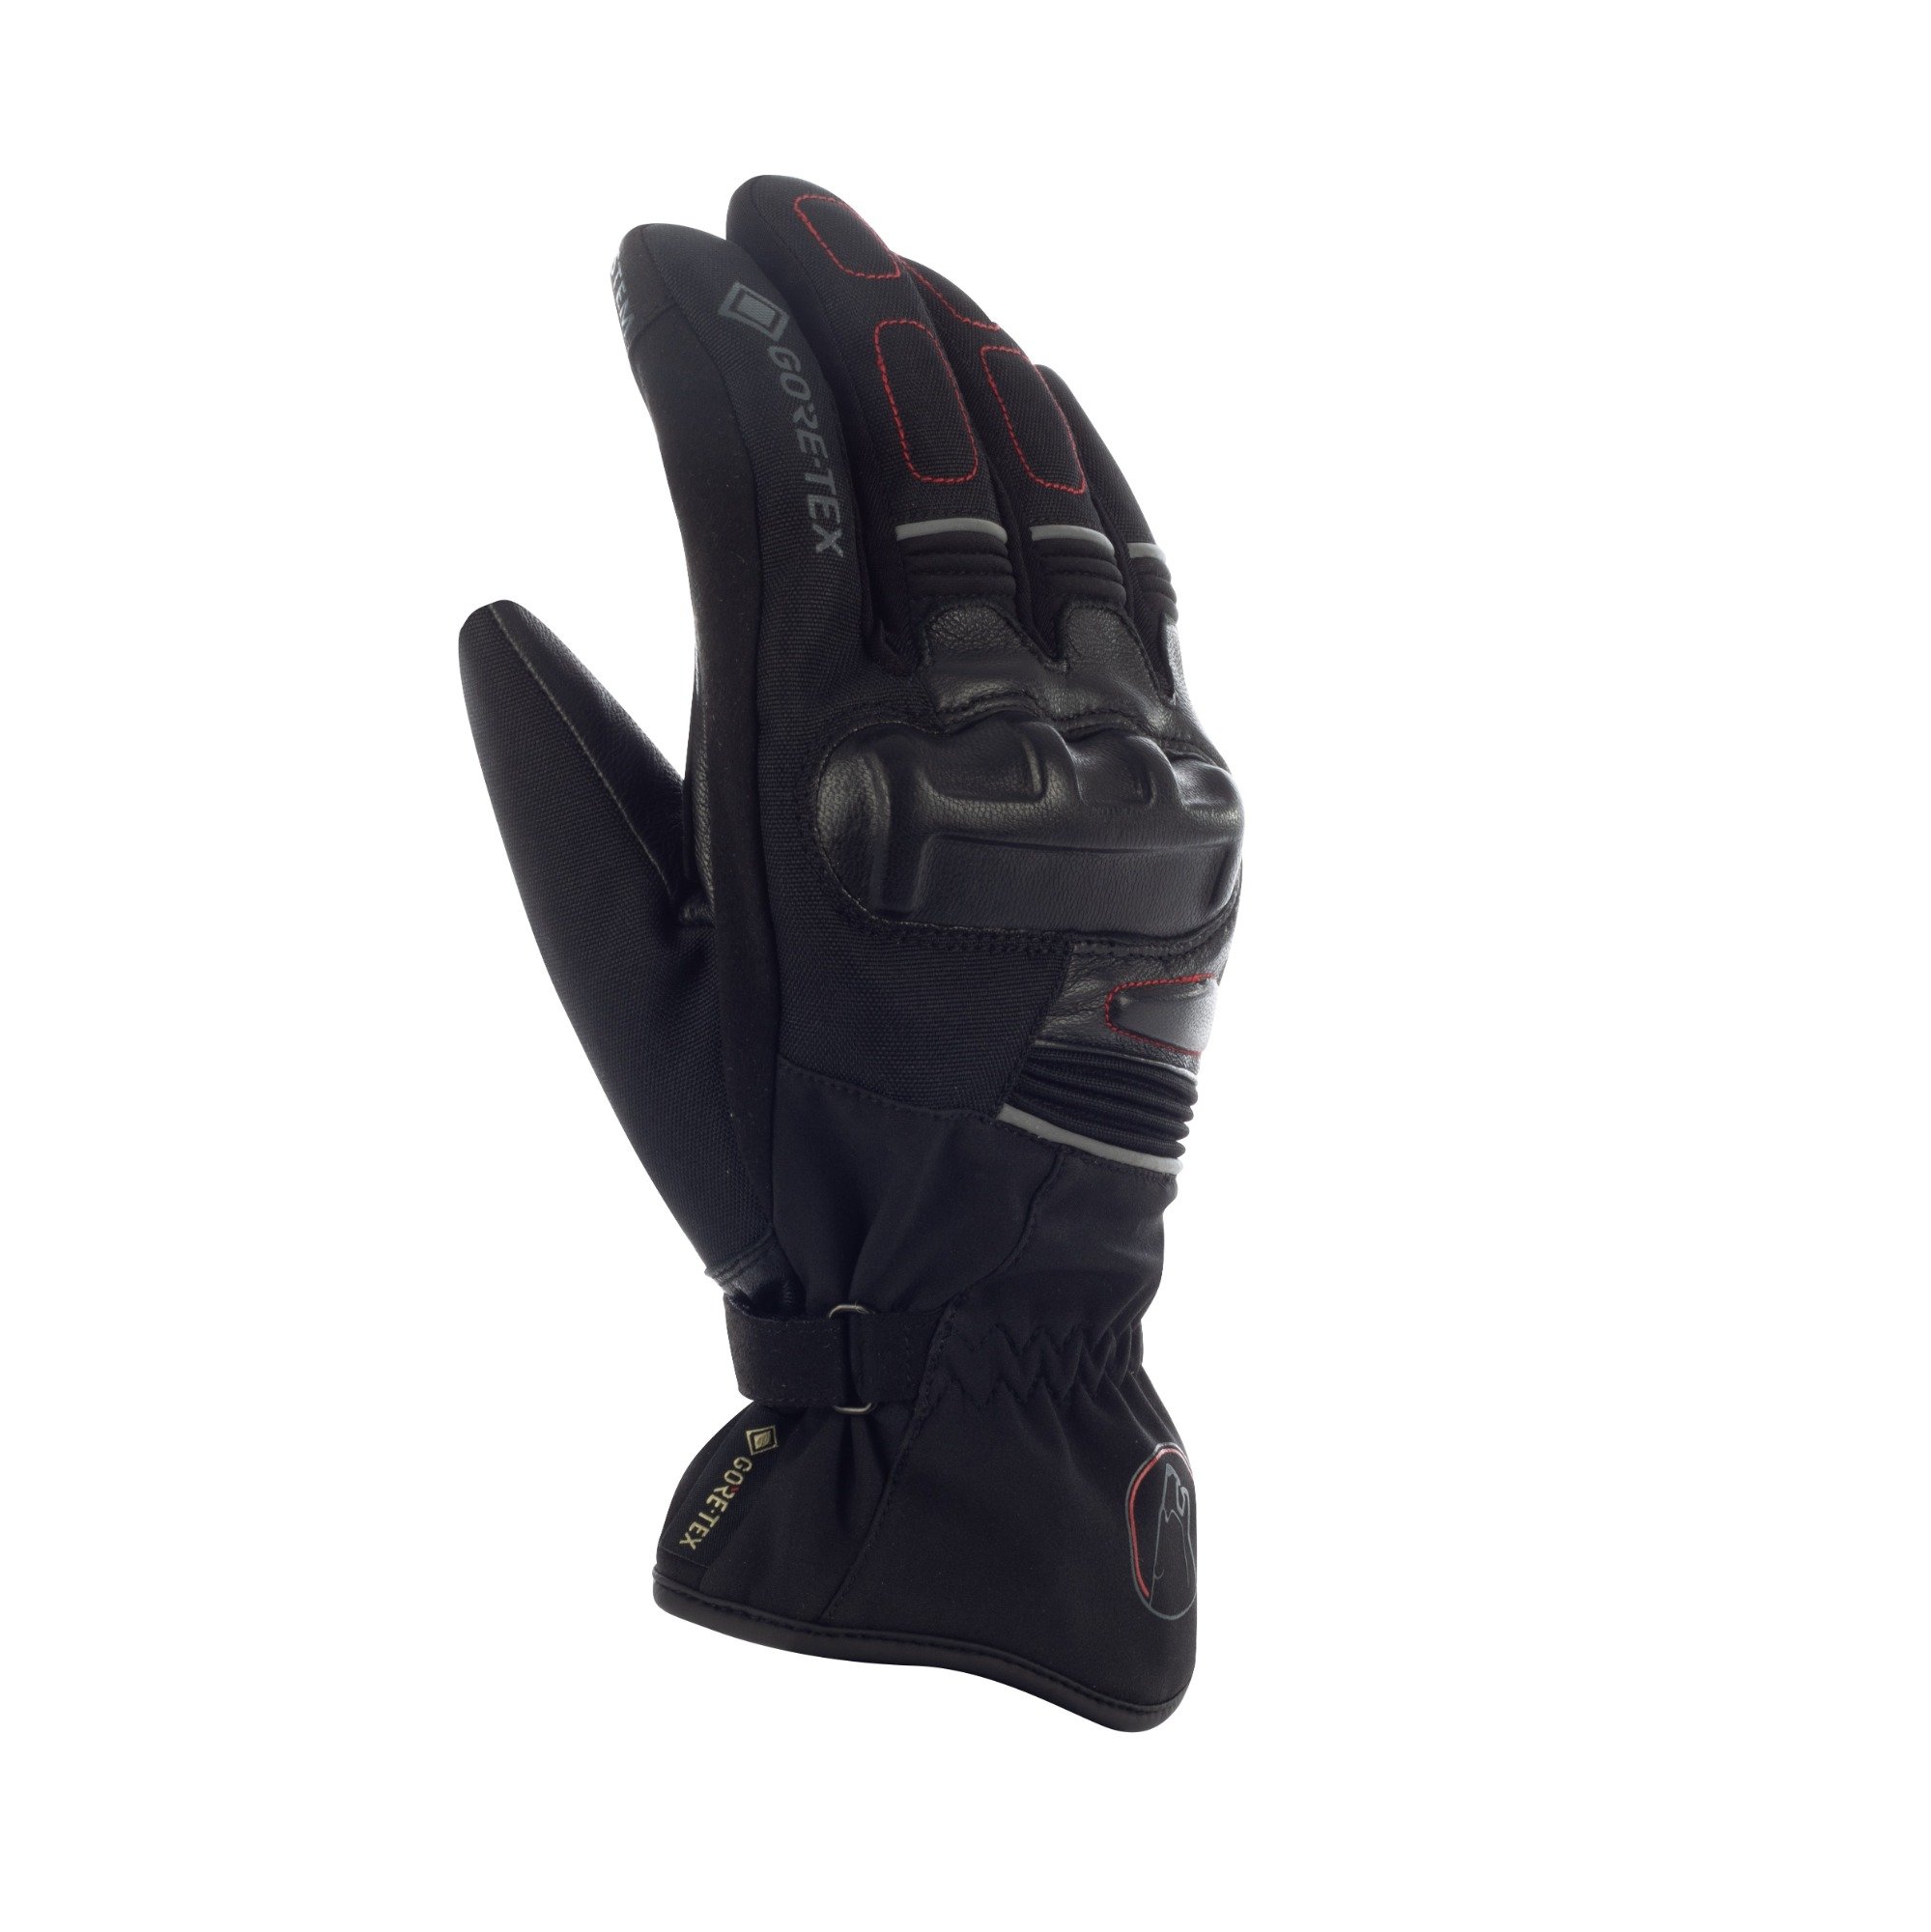 Image of Bering Punch GTX Gloves Black Size T10 EN